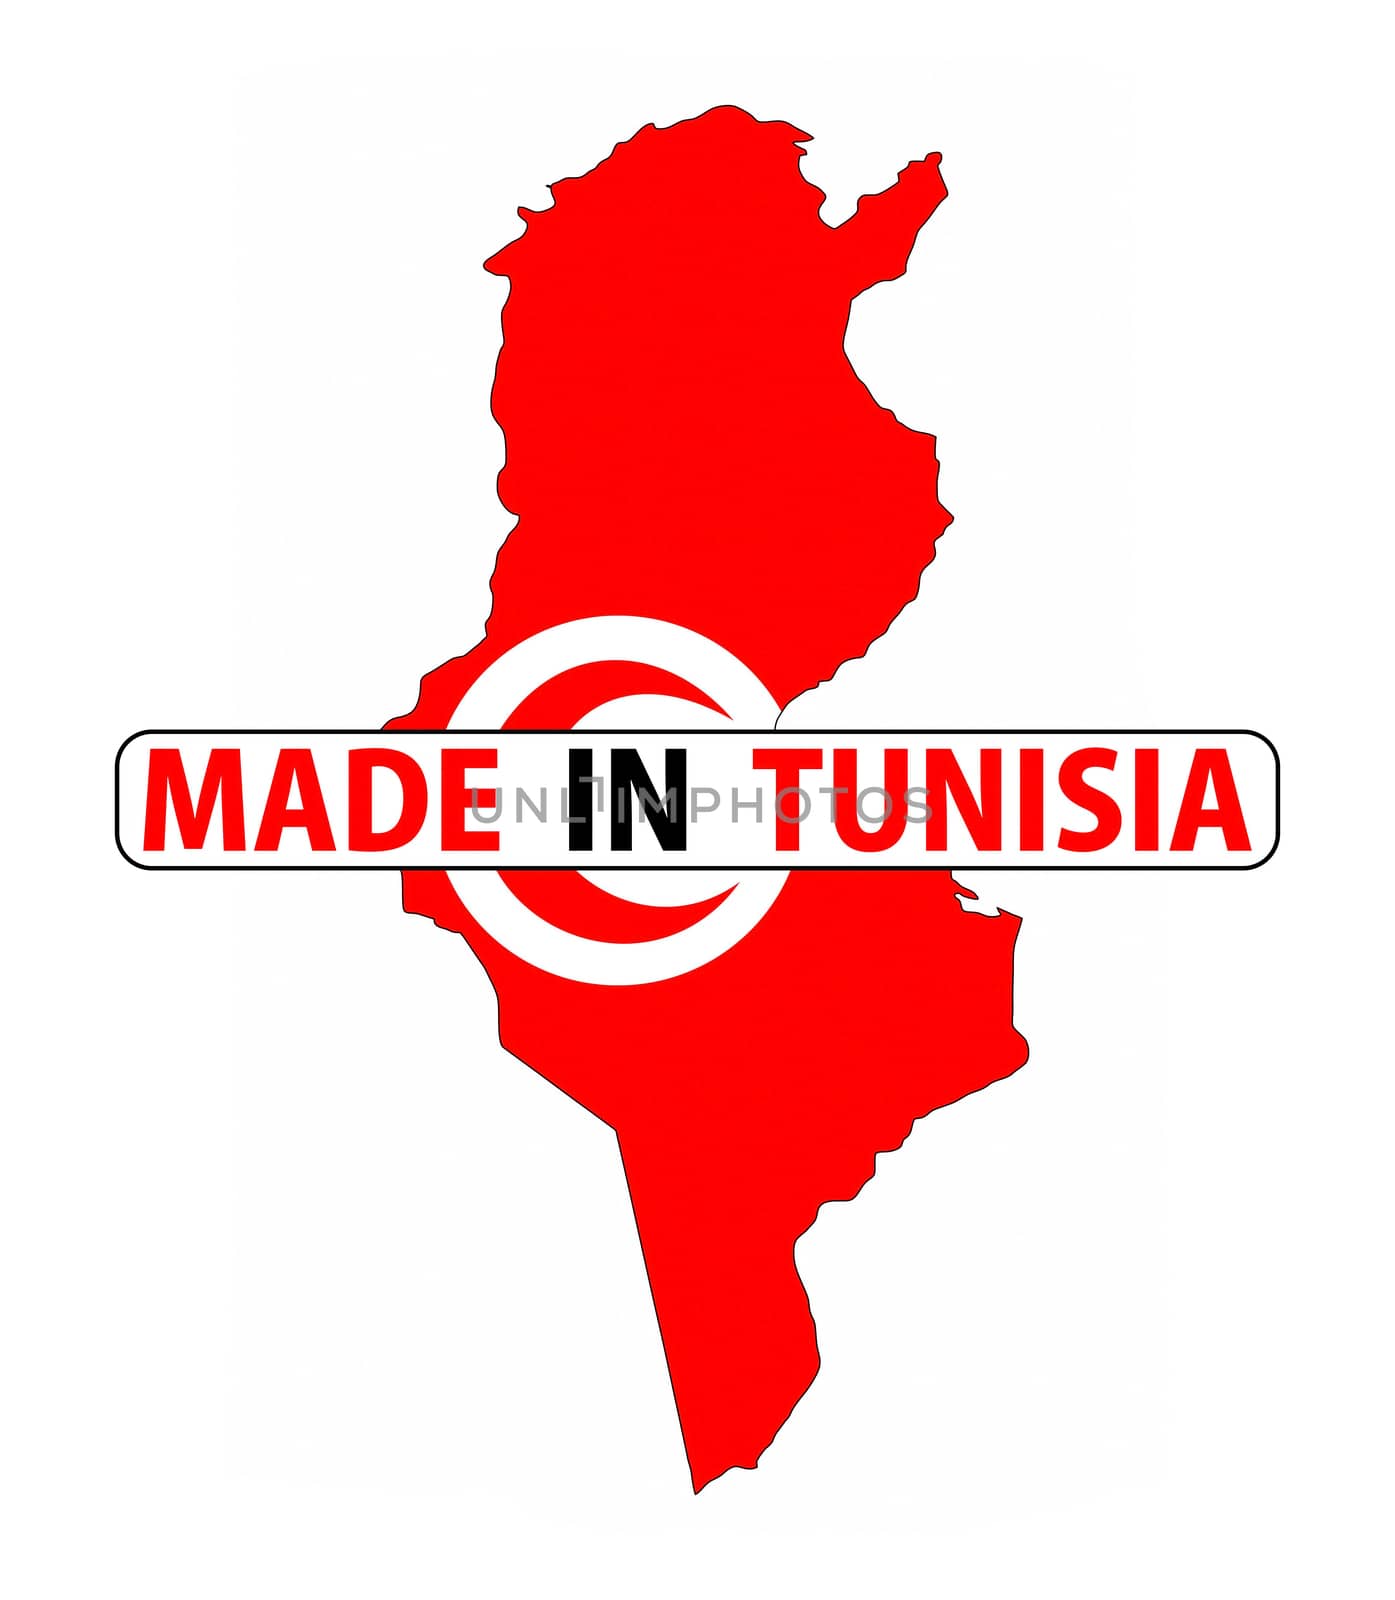 made in tunisia by tony4urban